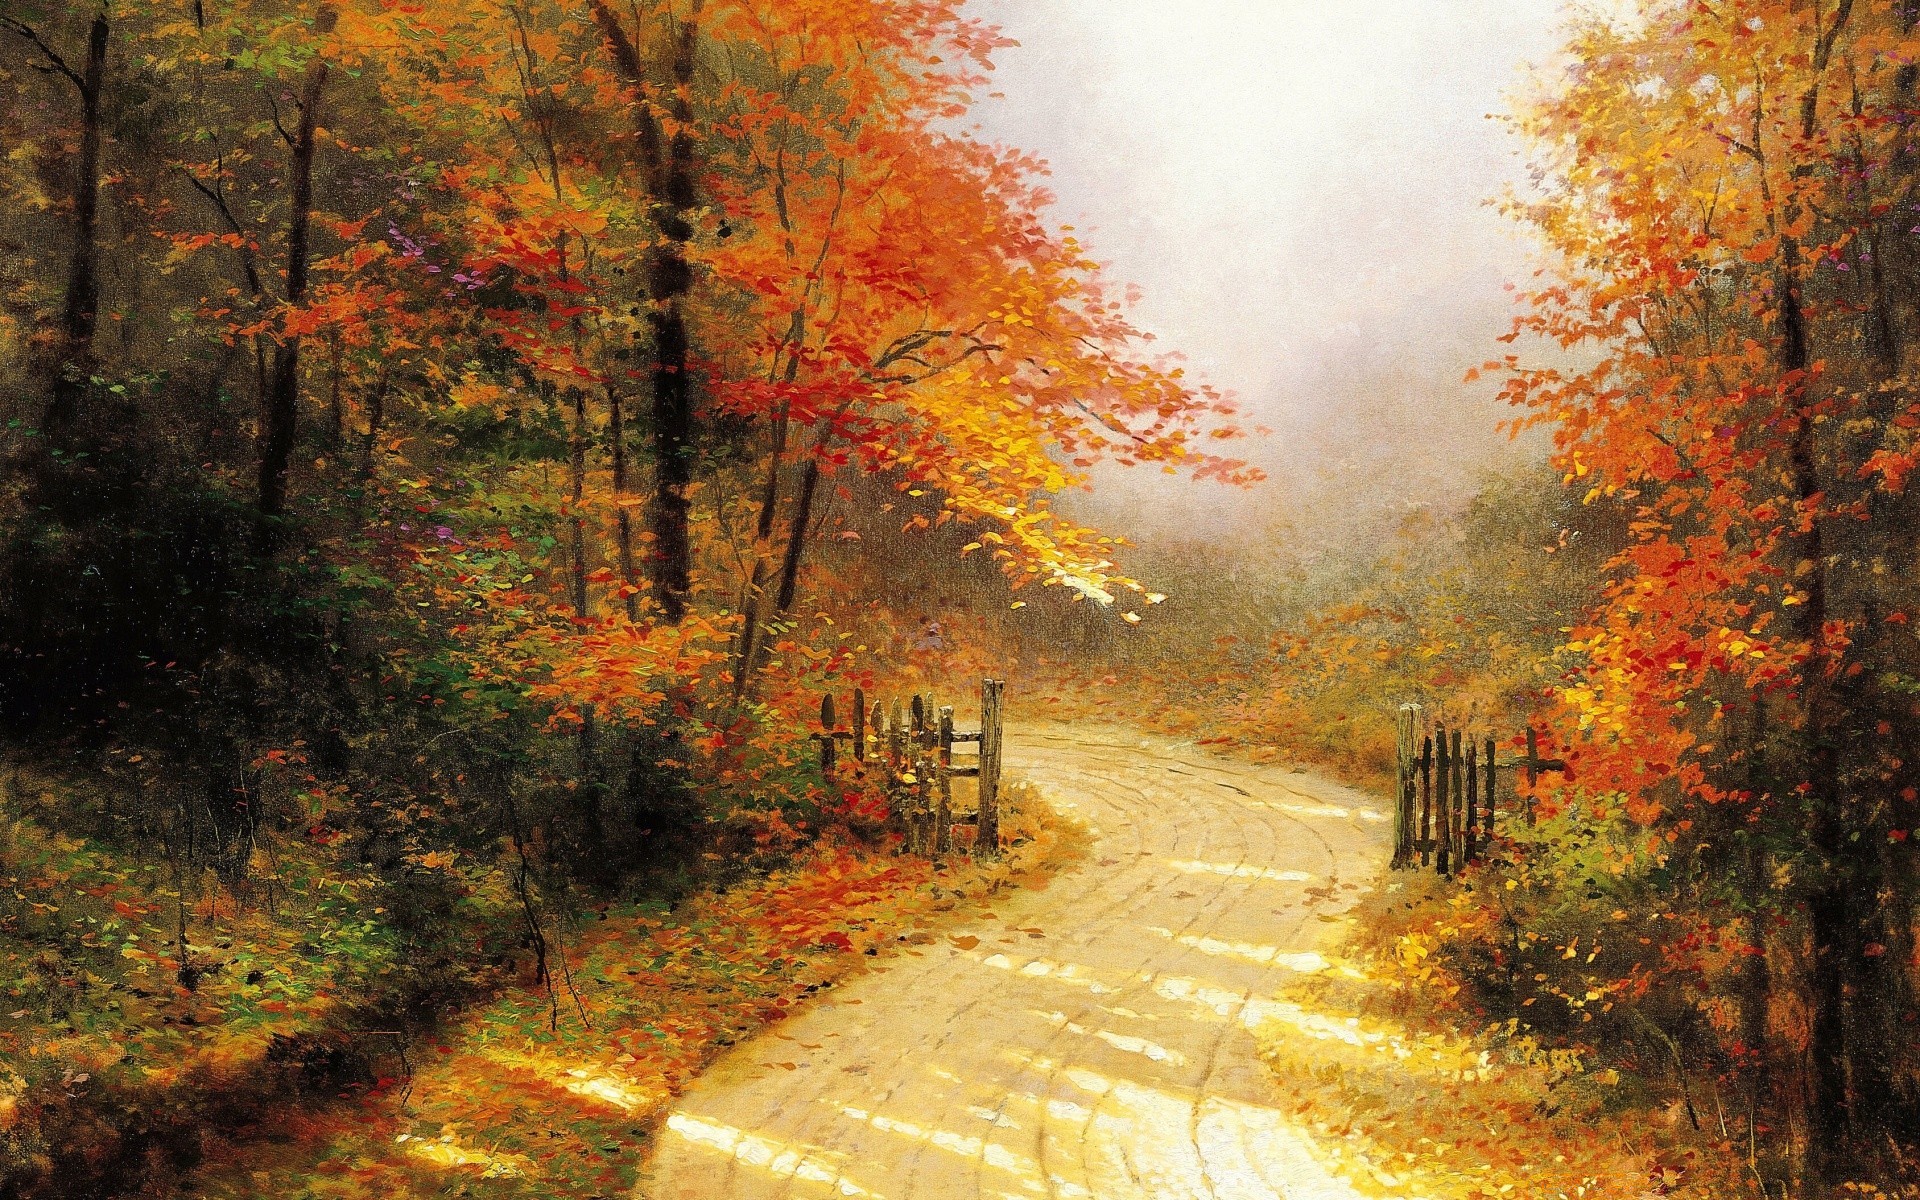 осень осень лист дерево древесины дорога пейзаж парк природа туман туман рассвет на открытом воздухе живописный сезон руководство кленовый сельской местности хорошую погоду пейзажи